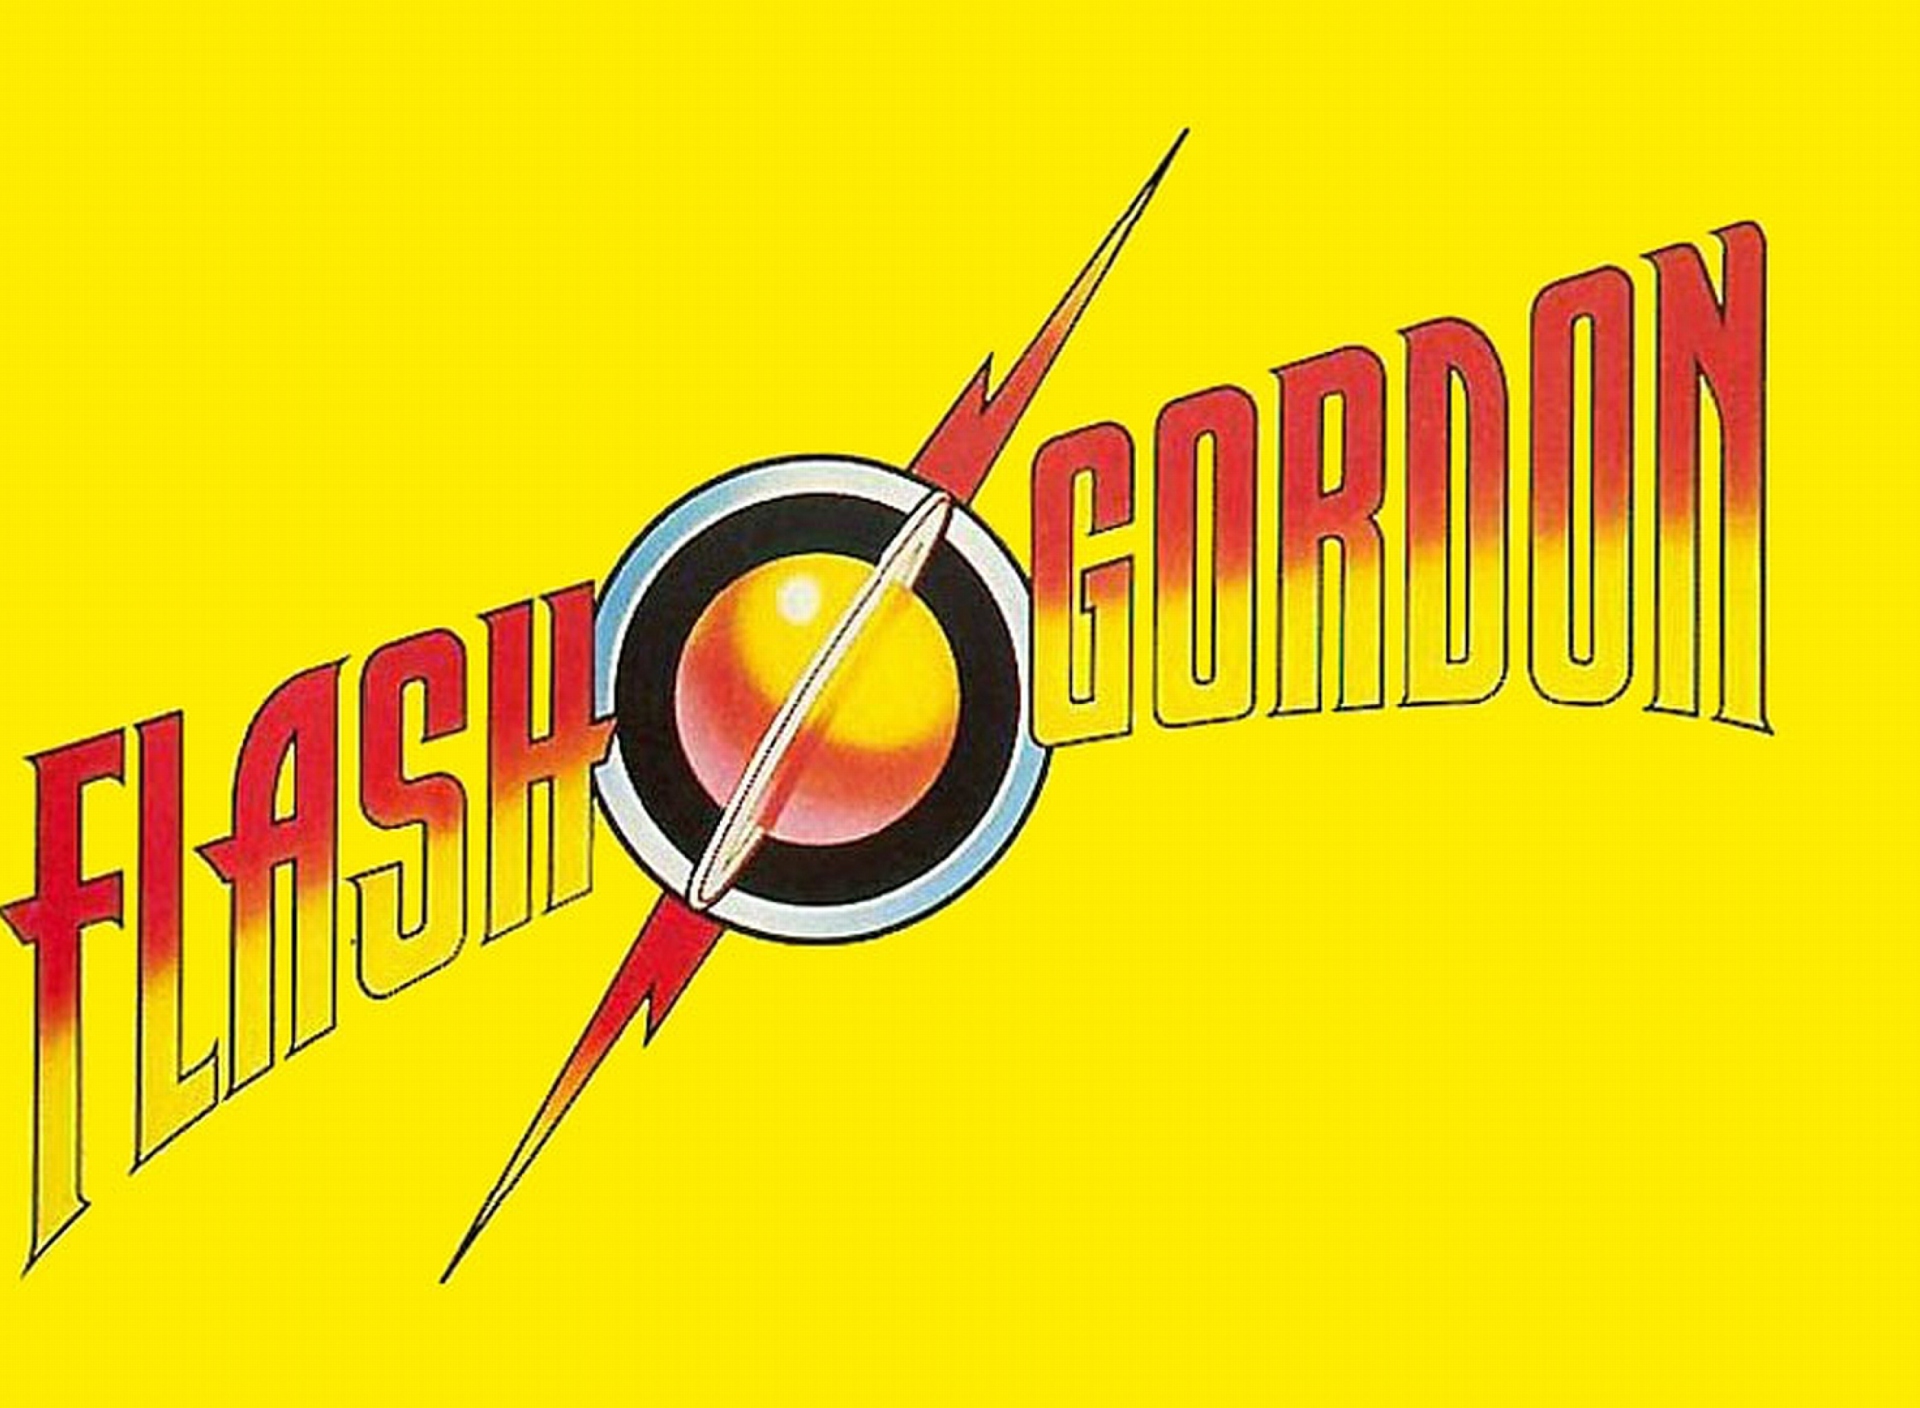 Sfondi Flash Gordon 1920x1408